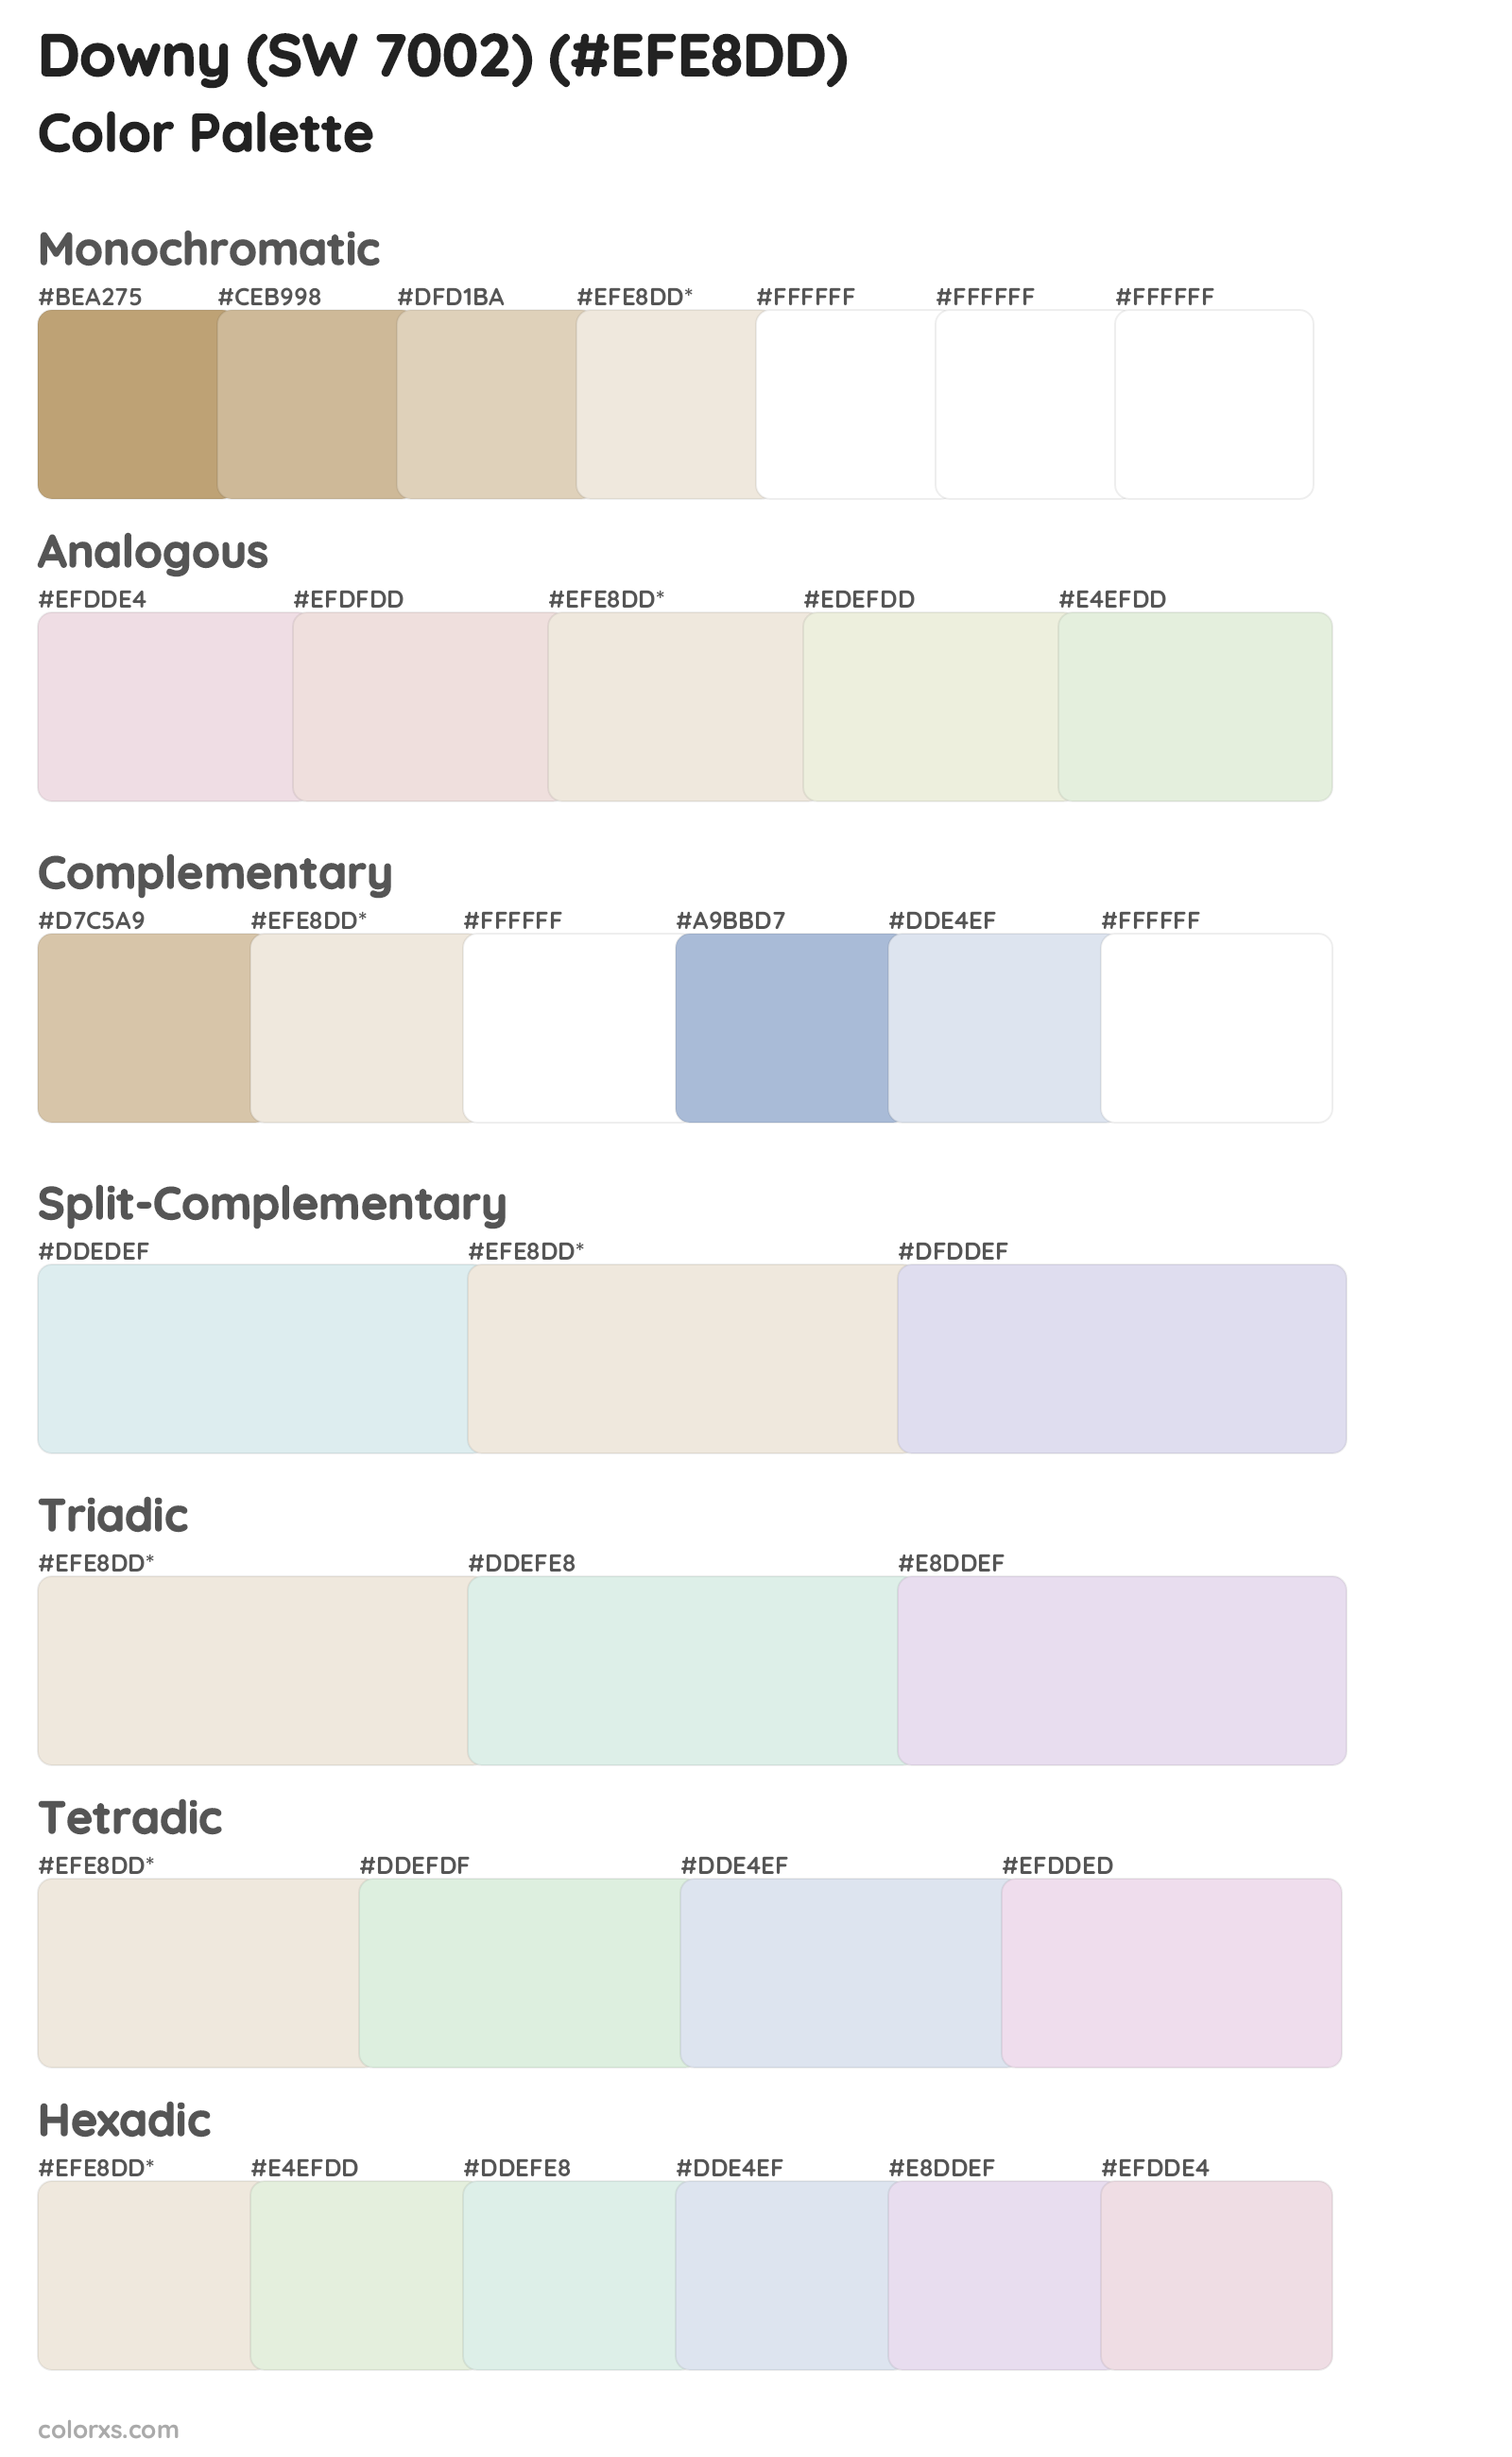 Downy (SW 7002) Color Scheme Palettes